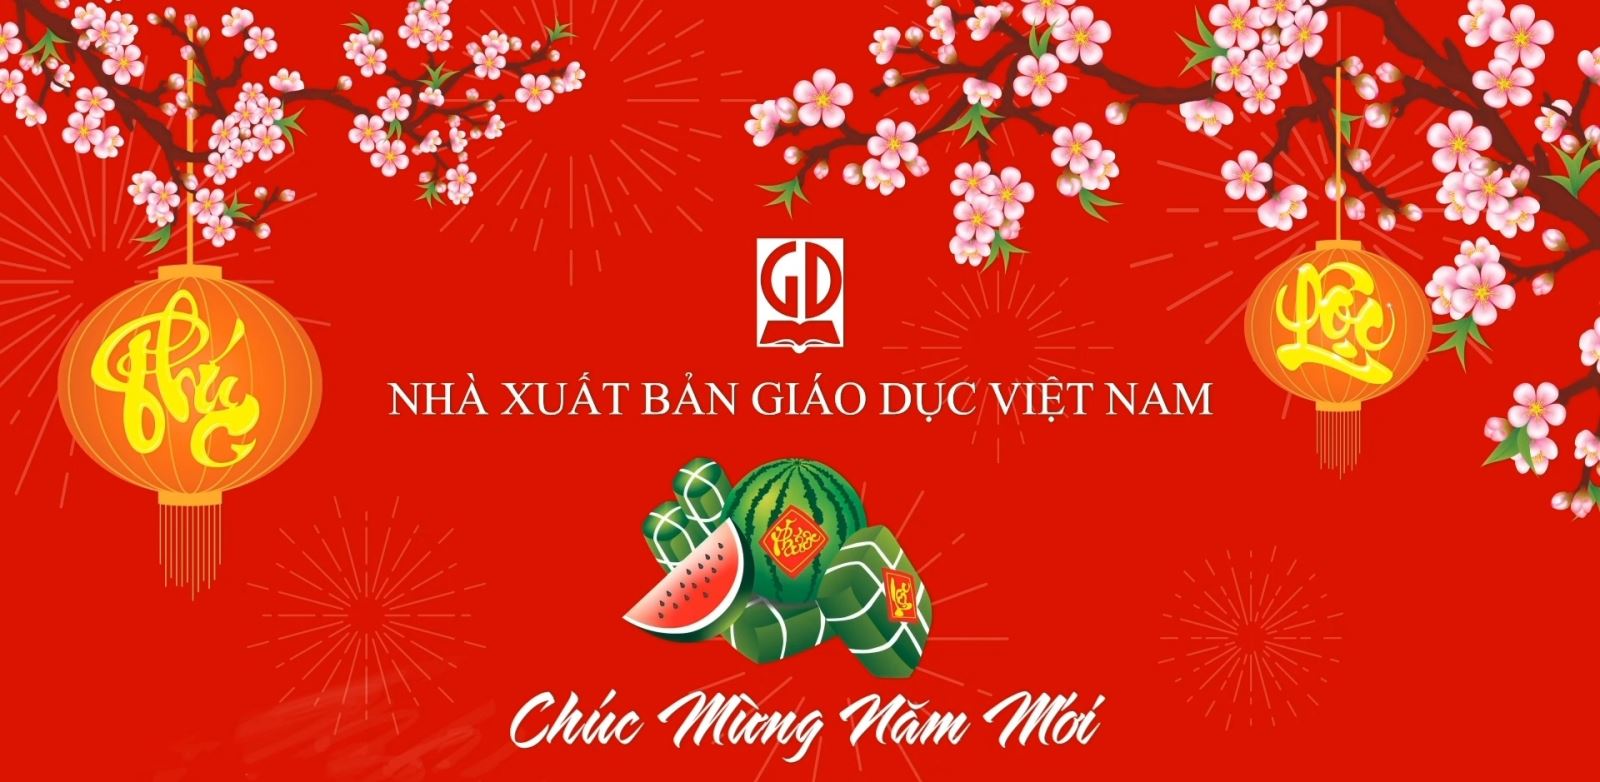 Nhà xuất bản Giáo dục Việt Nam chúc mừng năm mới Xuân Kỷ Hợi 2019